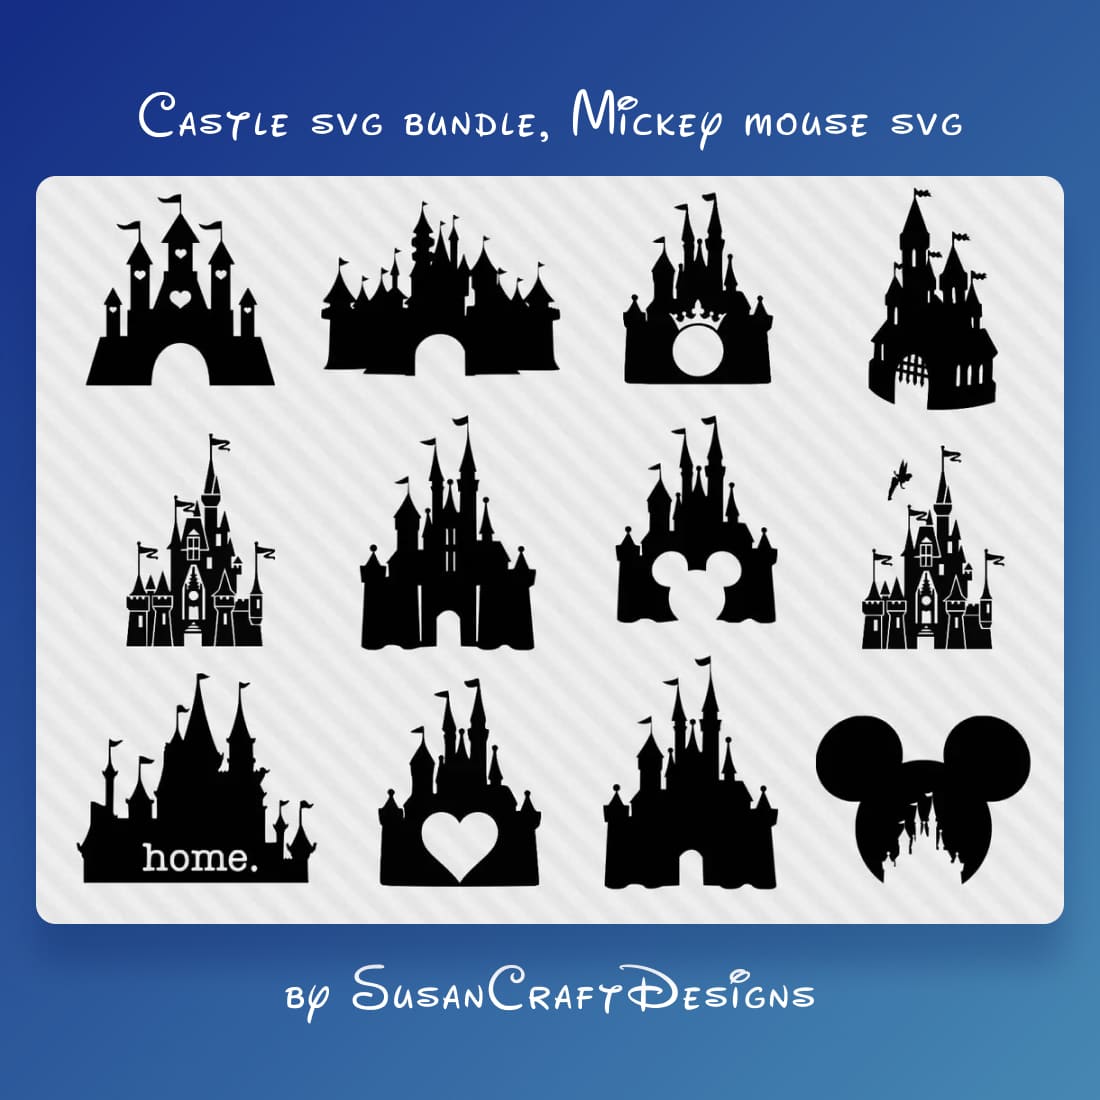 Princess Castle SVG Bundle main cover.